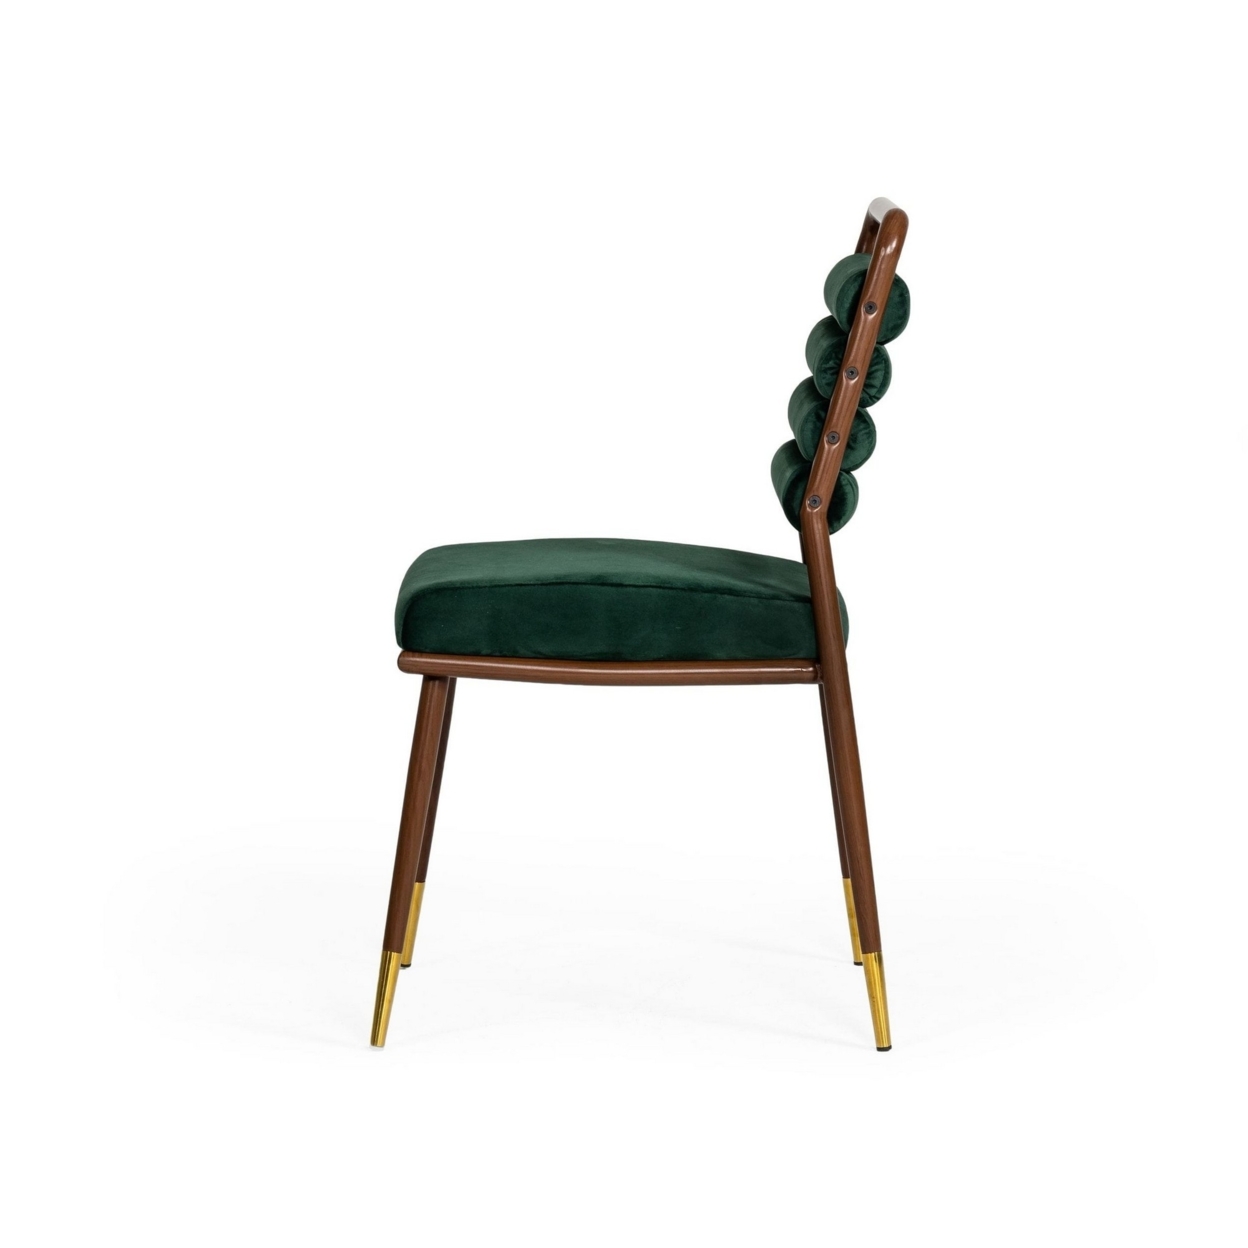 Cid 22 Inch Modern Fabric Dining Chair, Channel Tufted Back, Green, Walnut- Saltoro Sherpi